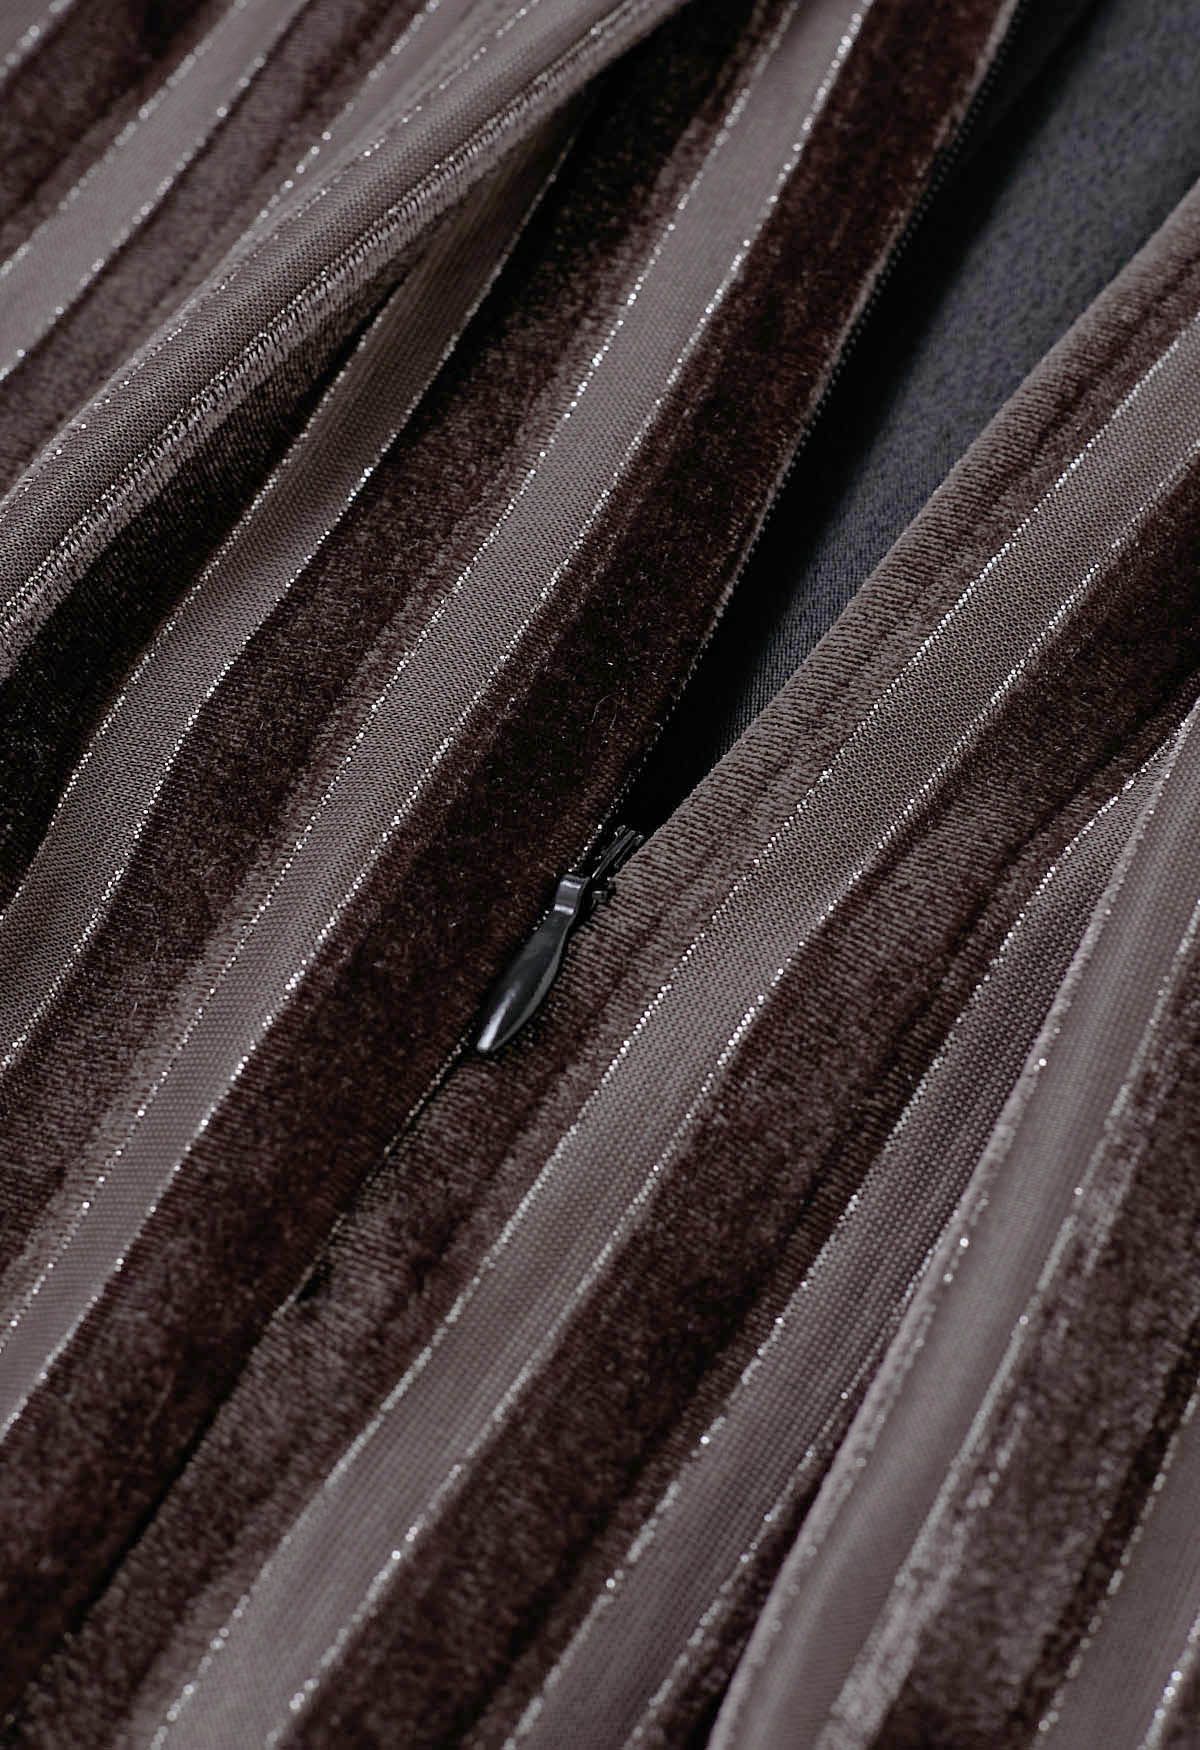 Shimmer Striped Pleated Velvet Midi Skirt in Brown